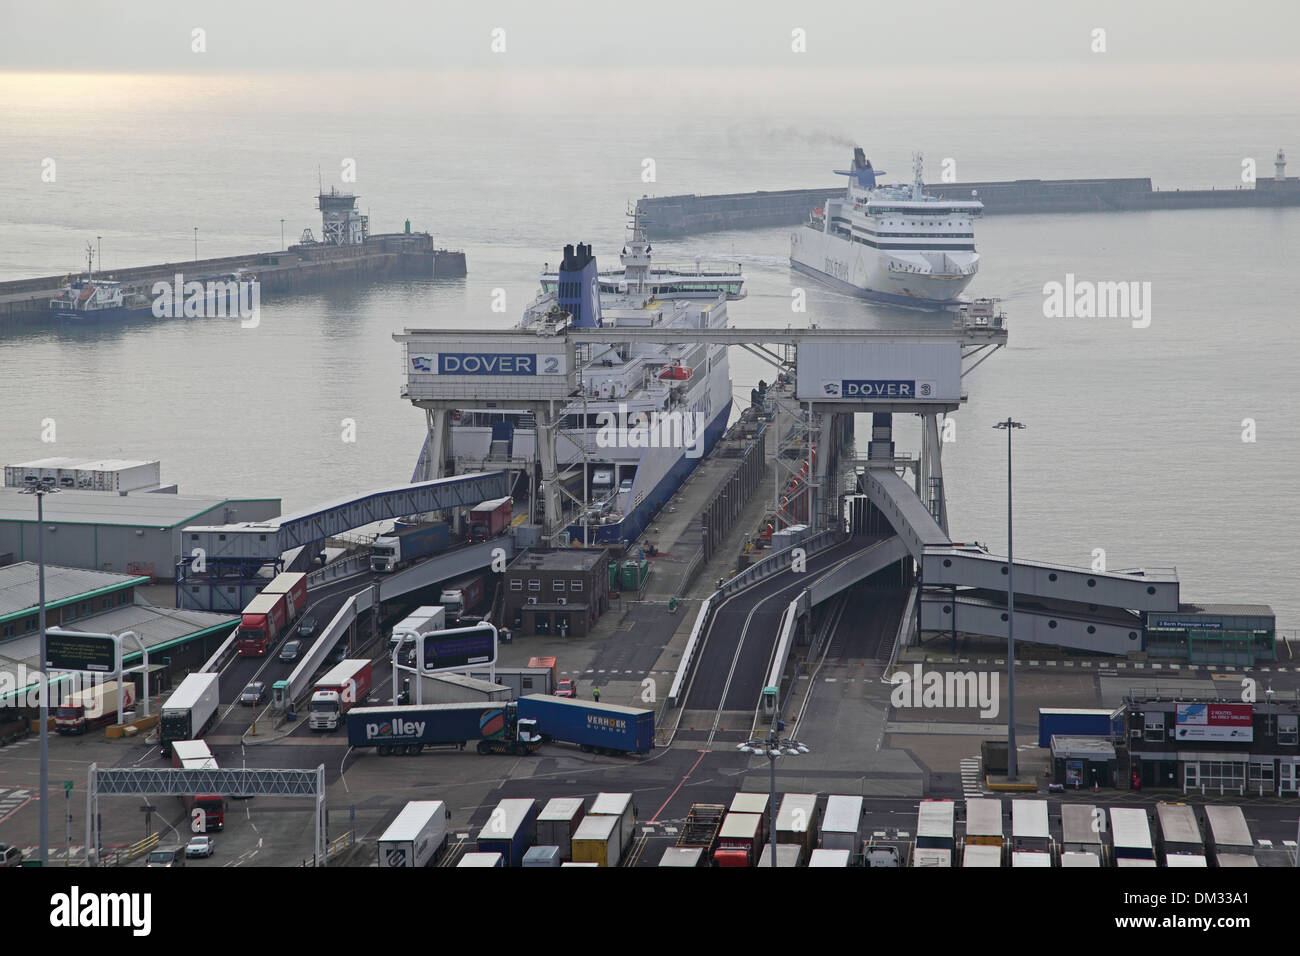 Ferries quai au port de Douvres, Kent, UK. Les camions sont indiqués en laissant un ferry comme un autre dans le port de manoeuvres Banque D'Images